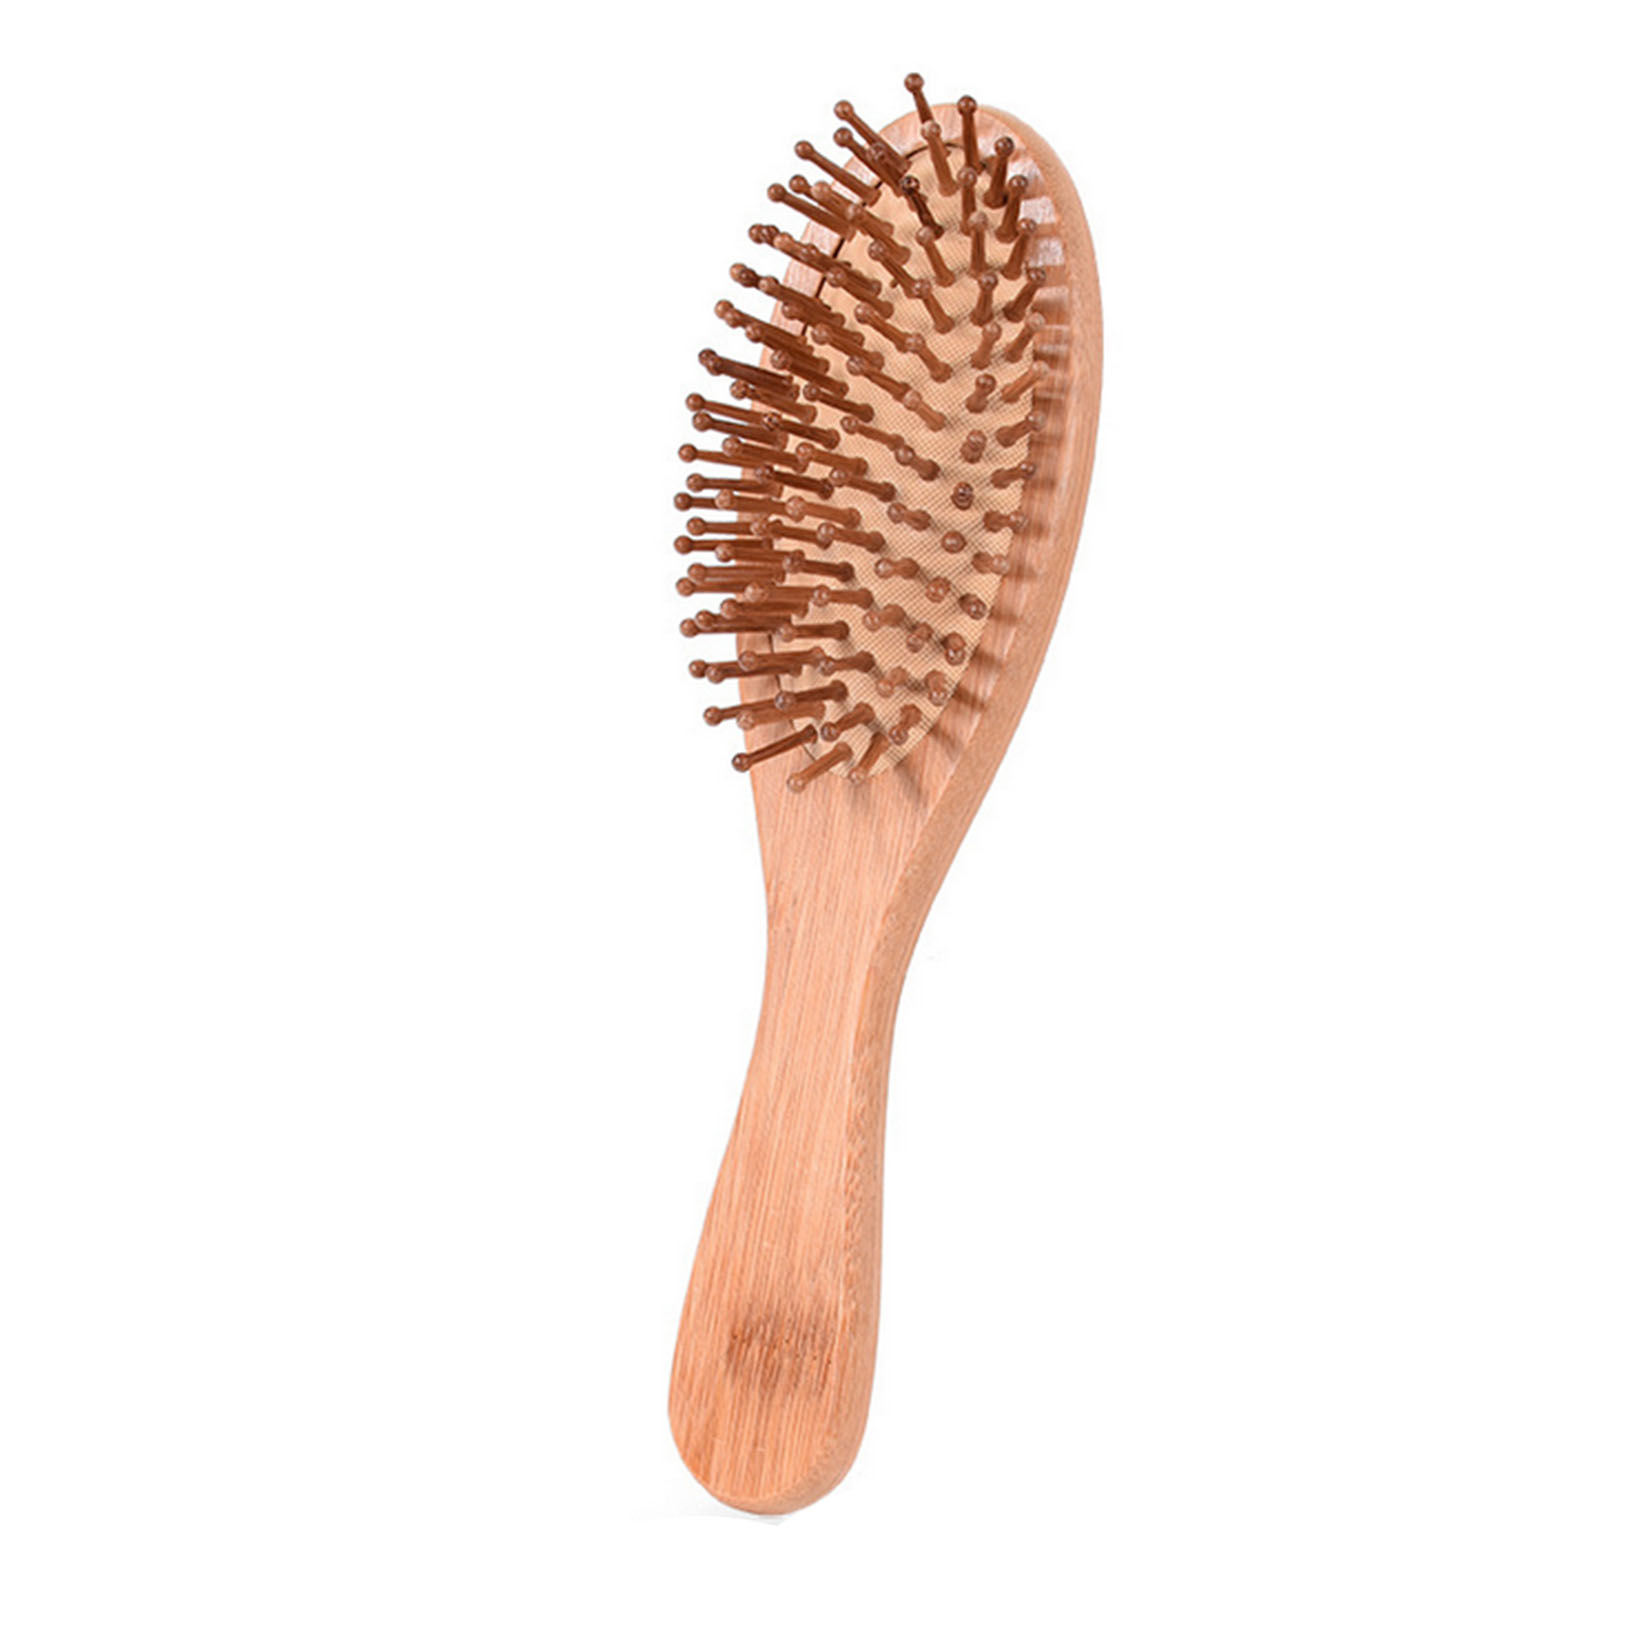 organic hair brush